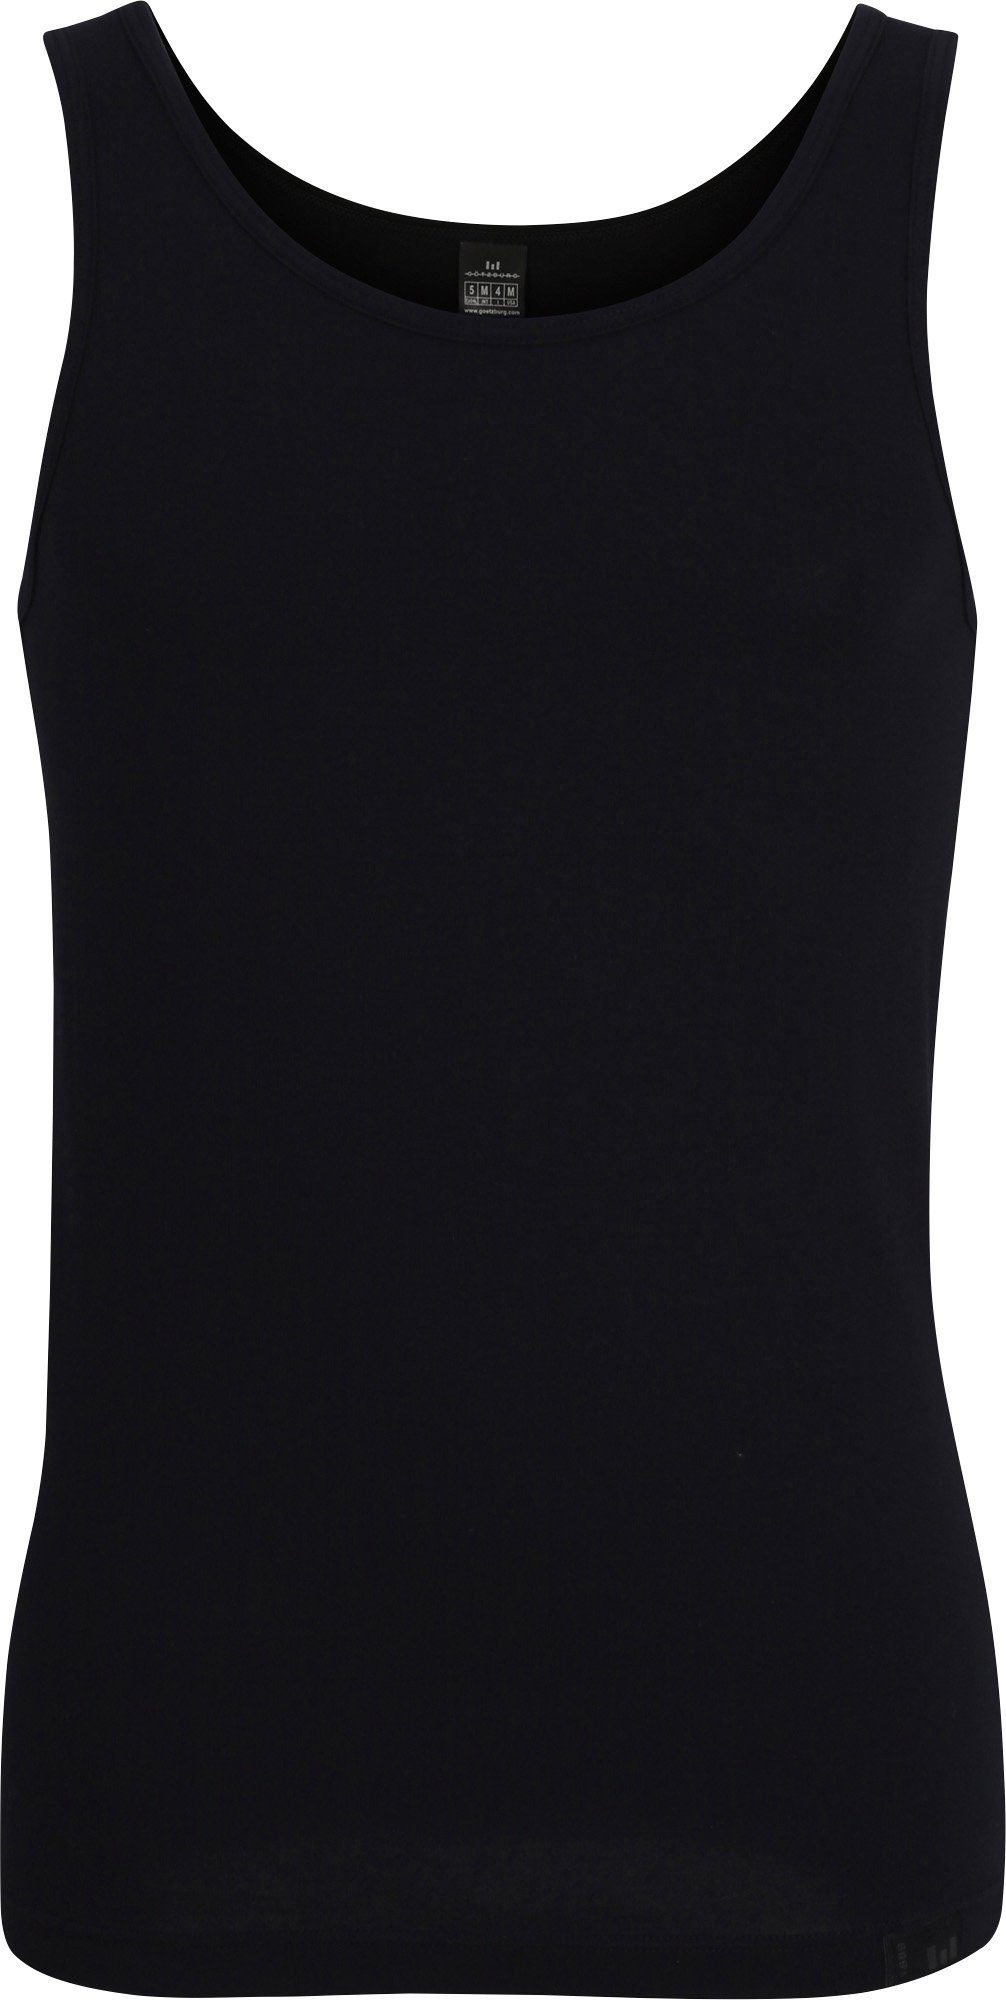 GÖTZBURG Unterhemd Herren-Unterhemd Uni Single-Jersey schwarz